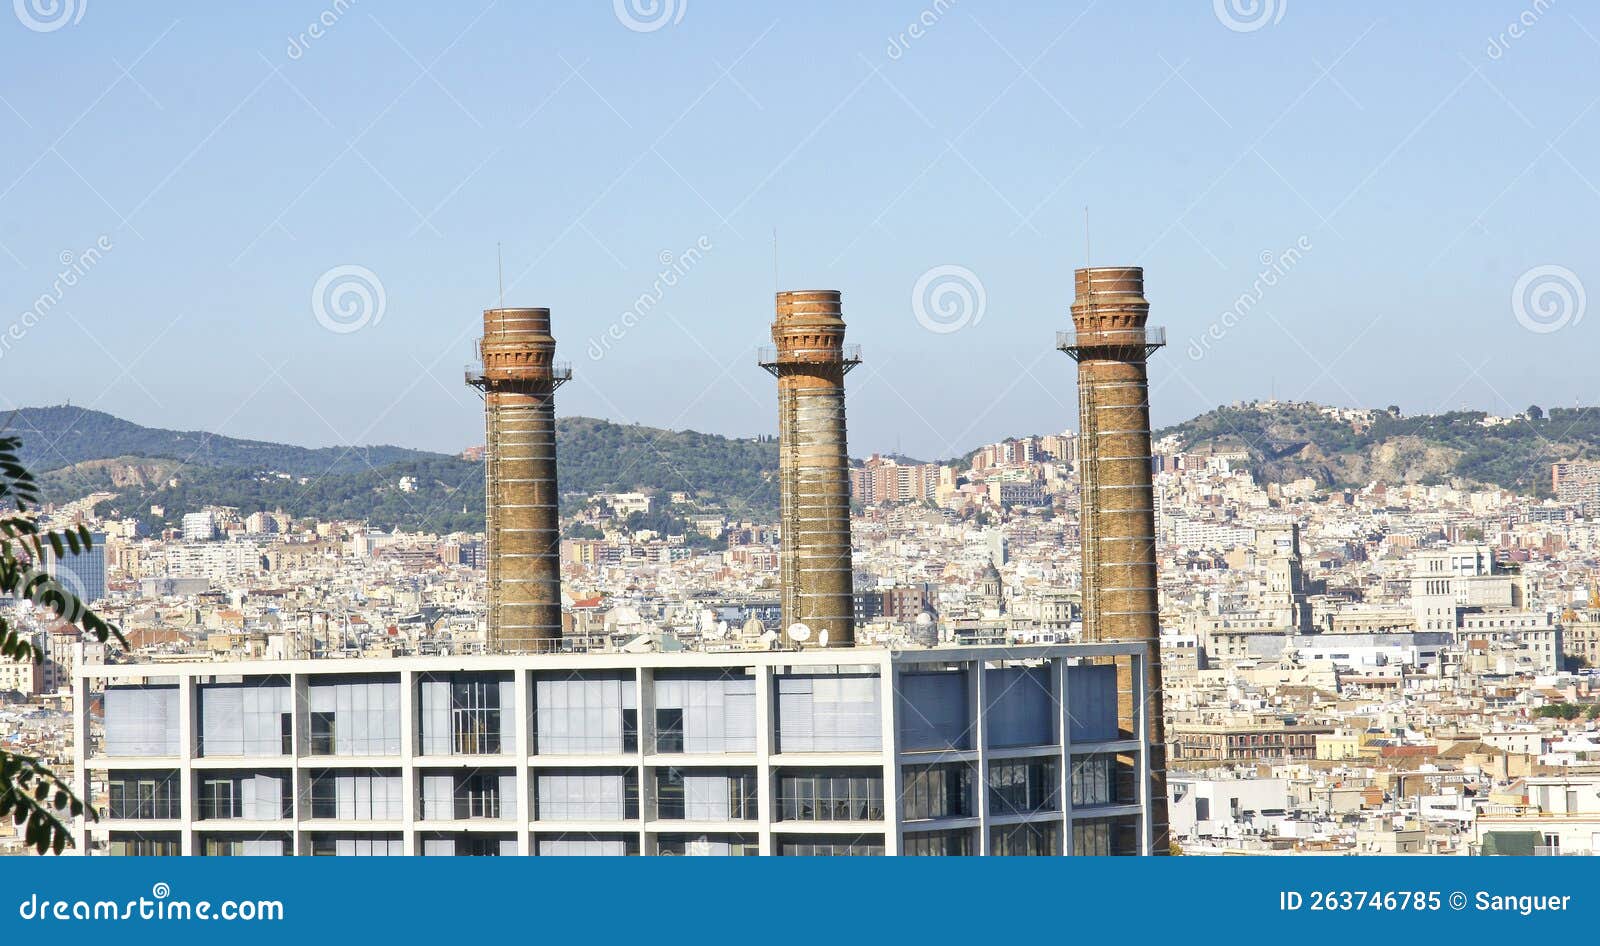 three chimneys on the paralelo de barcelona